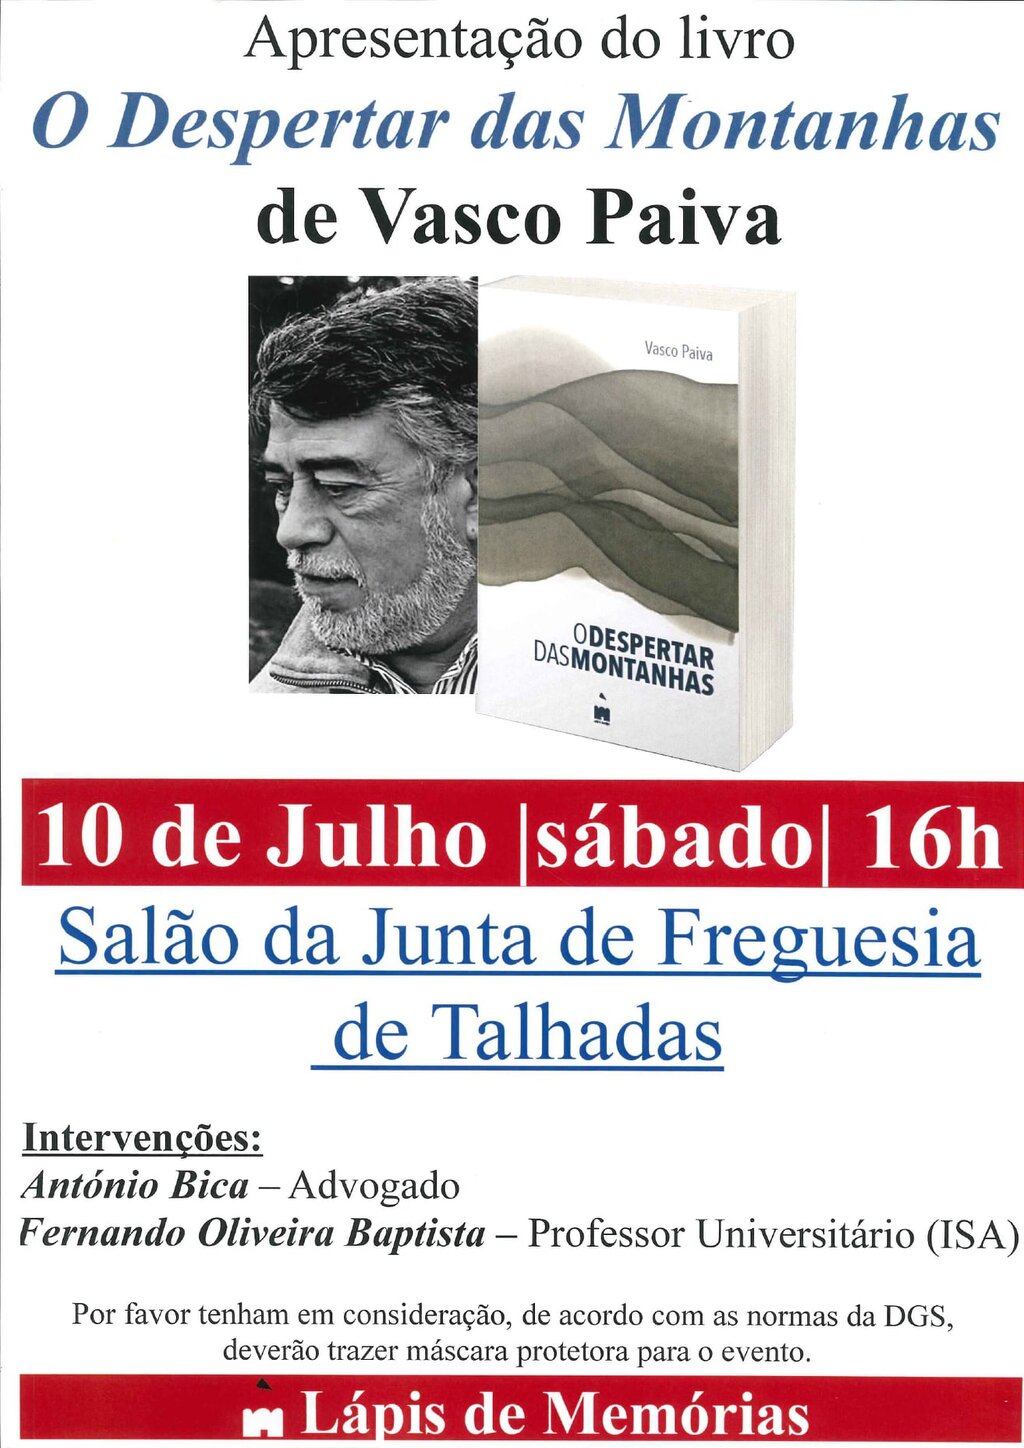 10 de julho - JF Talhadas - Apresentação do livro - O Despertar das Montanhas - de Vasco Paiva